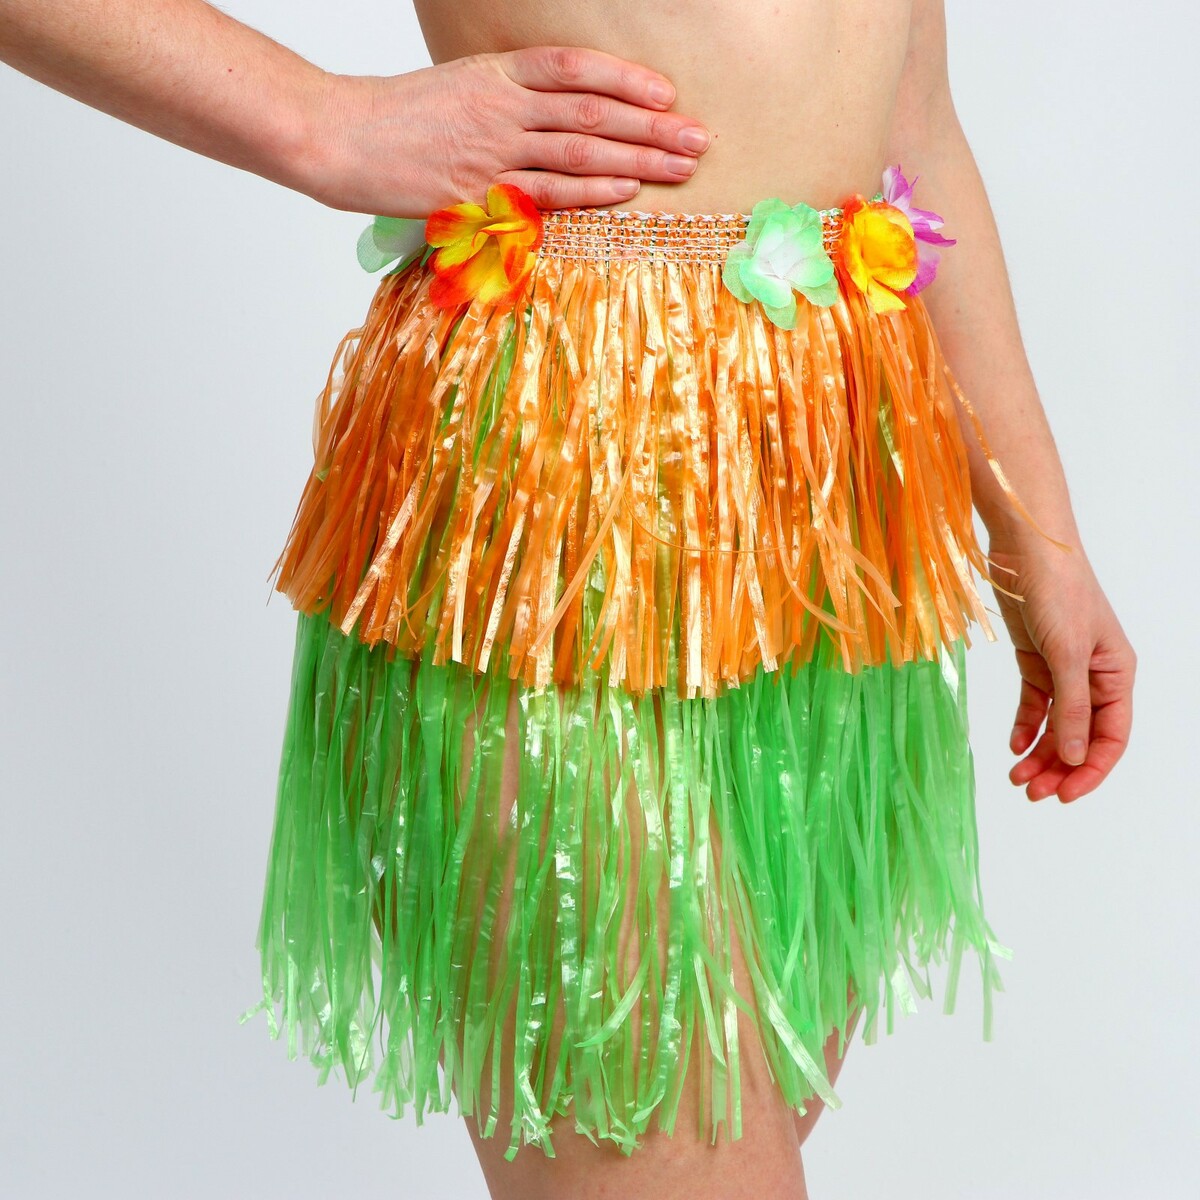 Гавайская юбка, 40 см, двухцветная оранжево-зеленая мазь держания toko 5508750 nordic base wax зеленая базовая 0°с 30°с 27 г